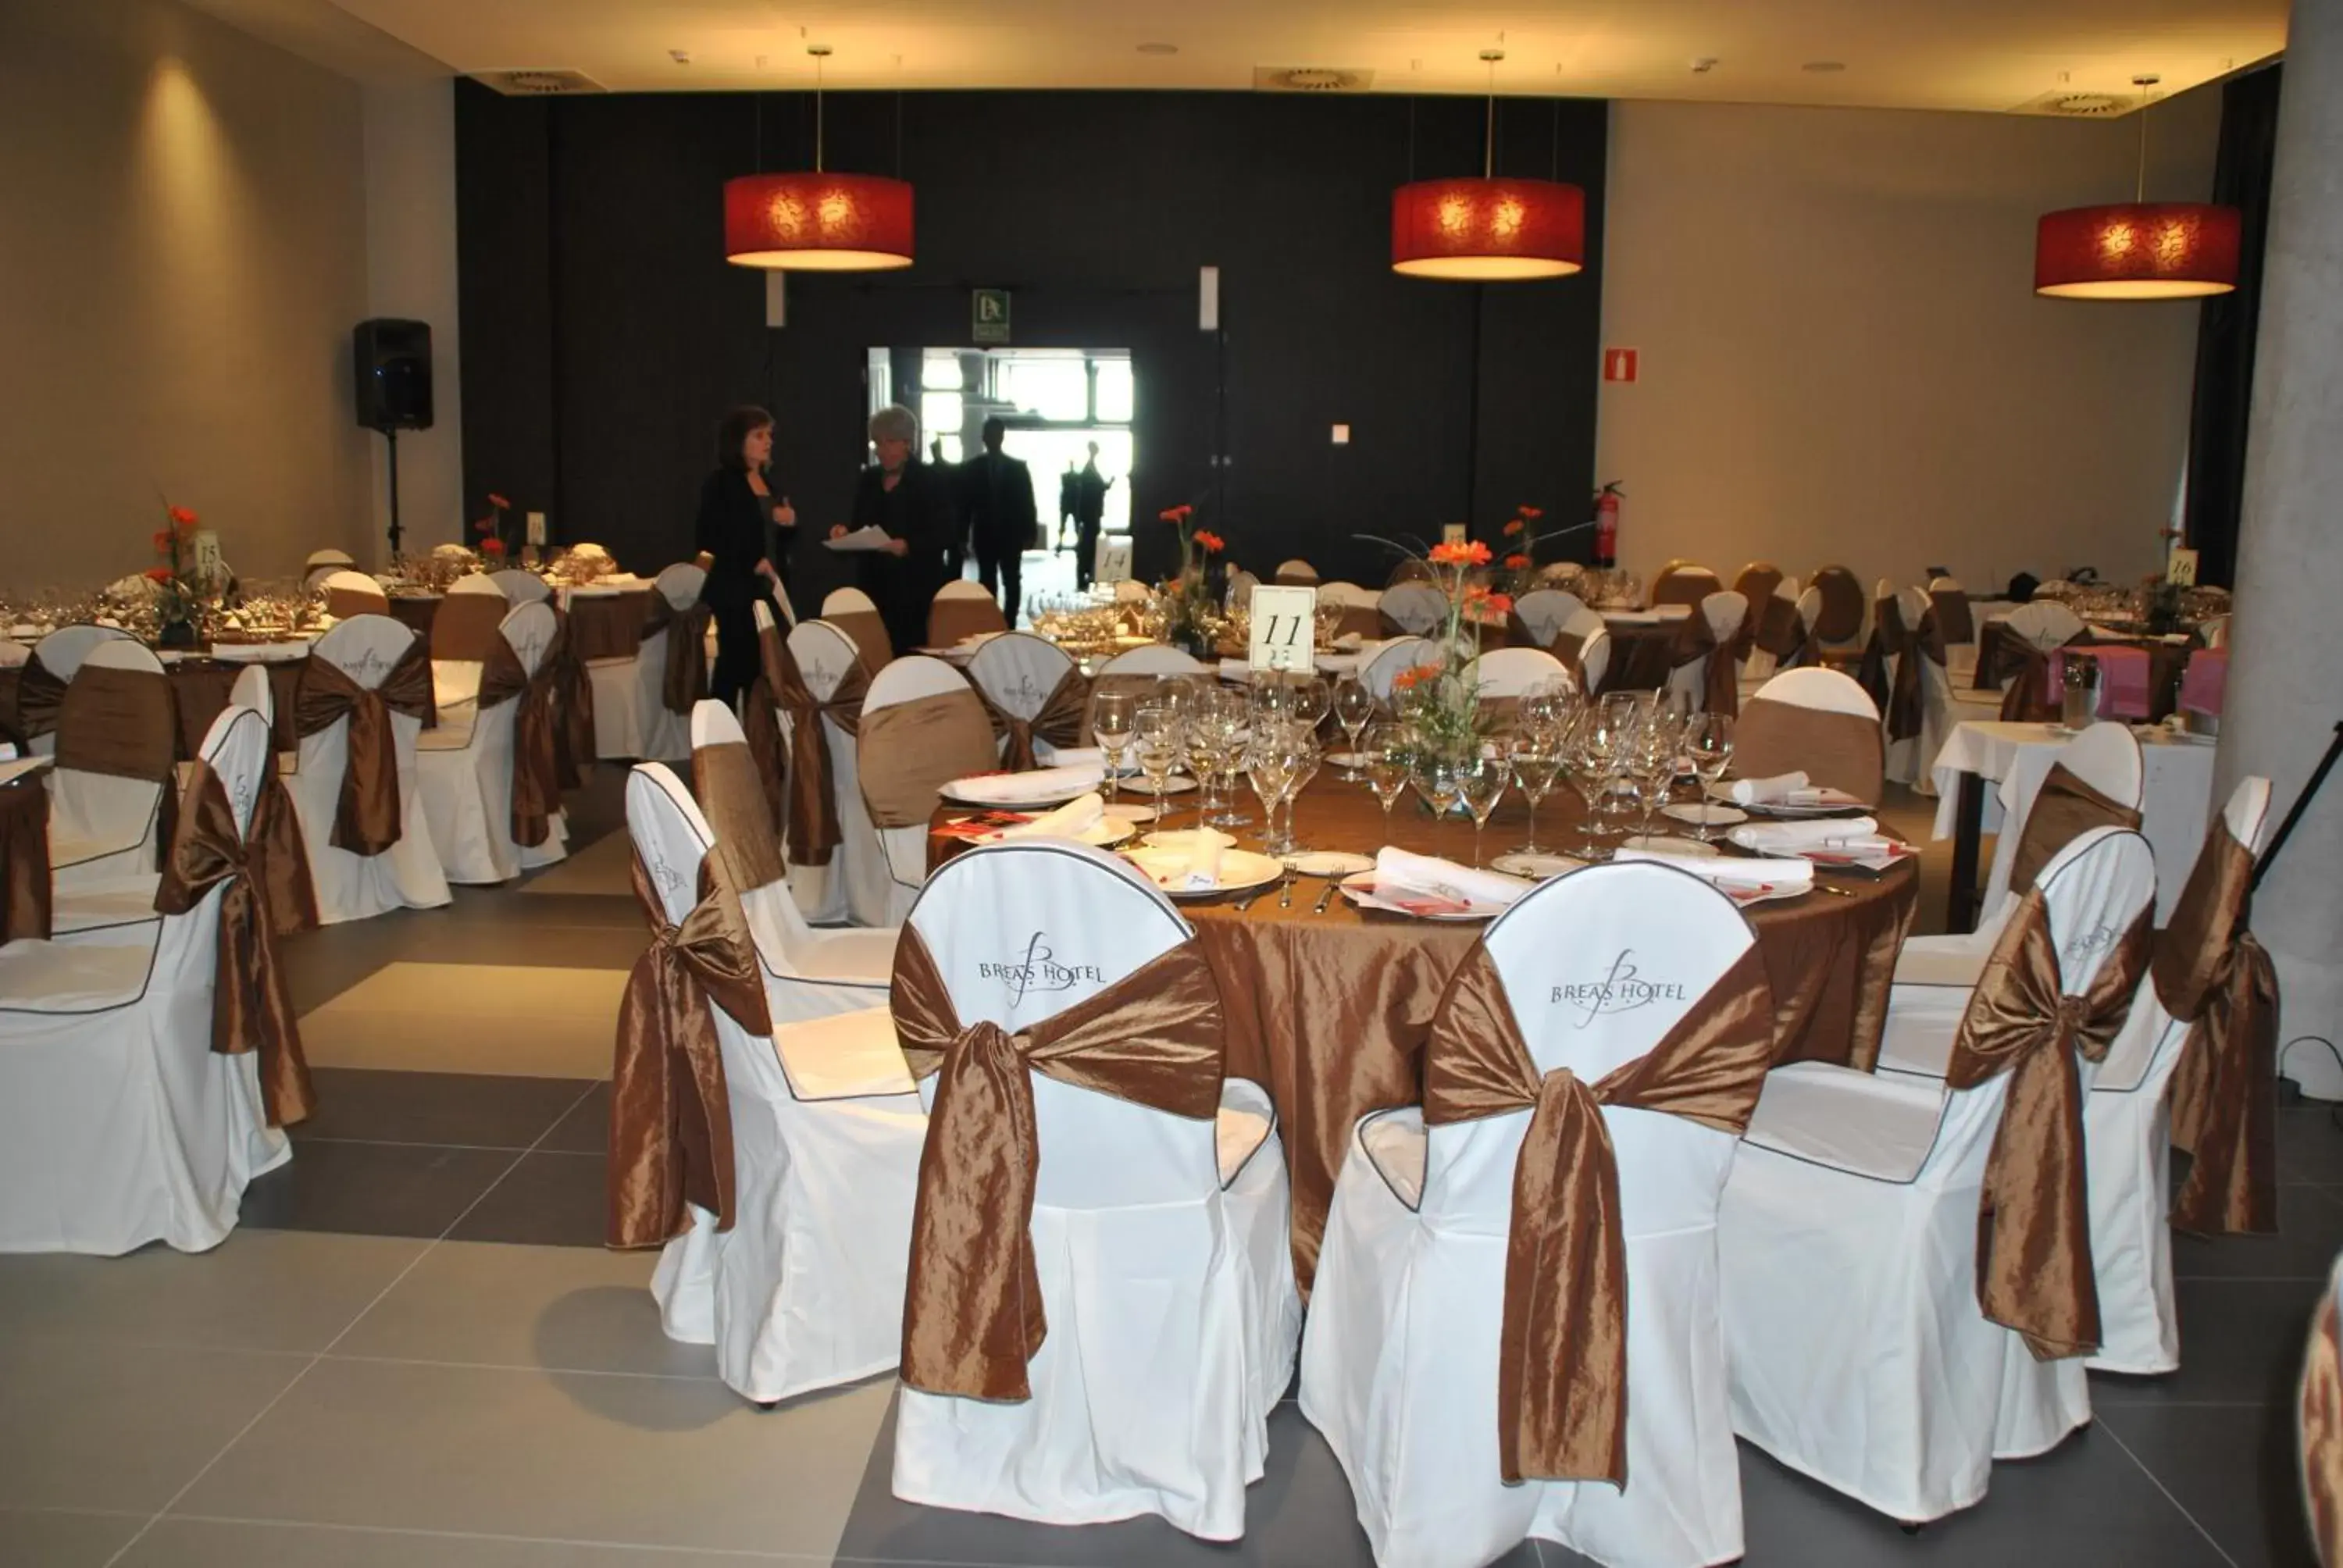 Banquet/Function facilities, Banquet Facilities in Brea's Hotel